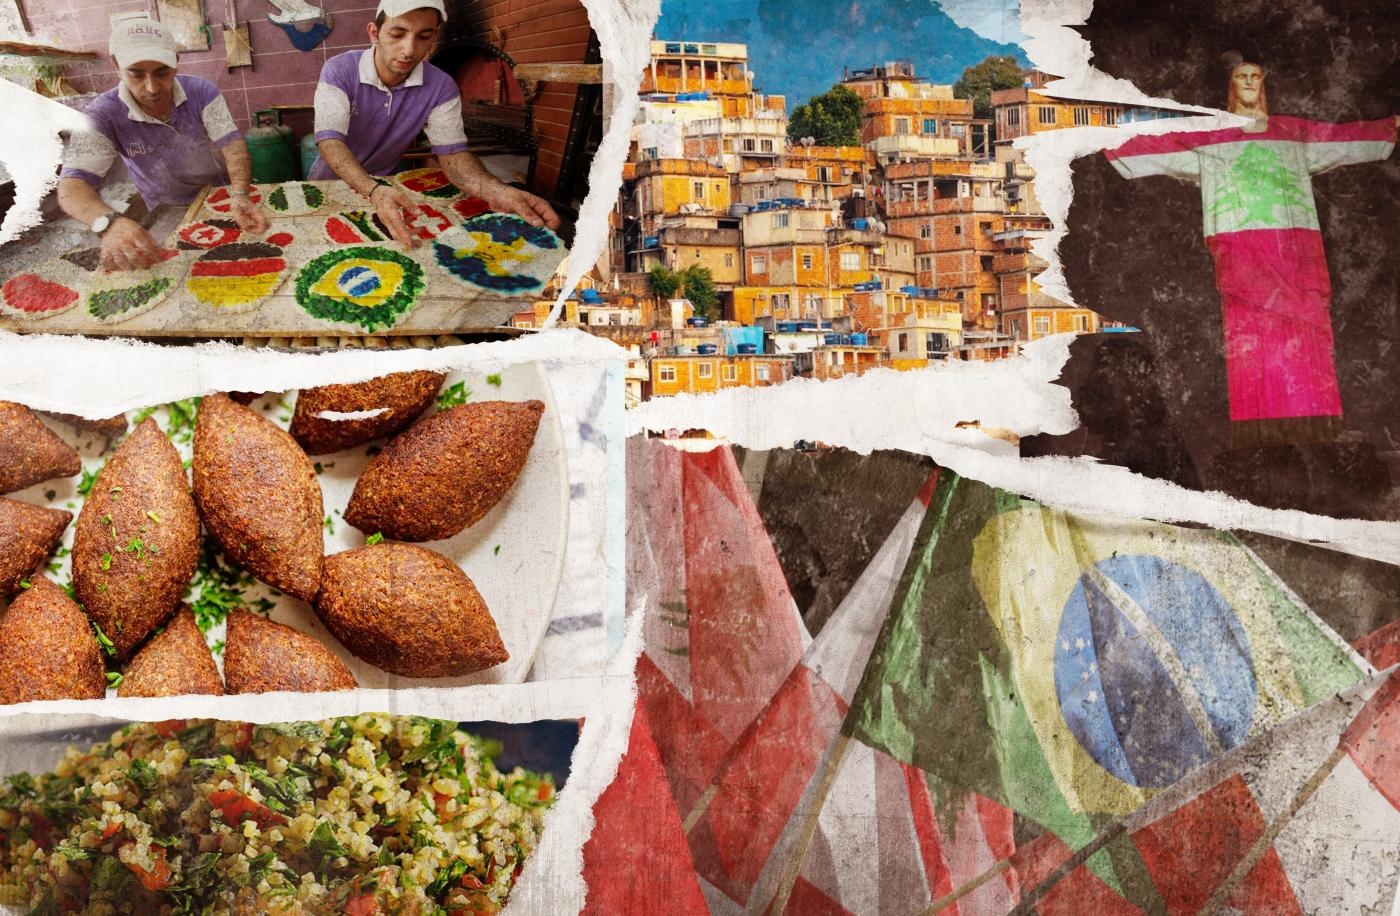 La communauté libanaise bien établie du Brésil a laissé sa marque dans tous les domaines, de la politique à la gastronomie (illustration : Mohamad Elaasar pour MEE)